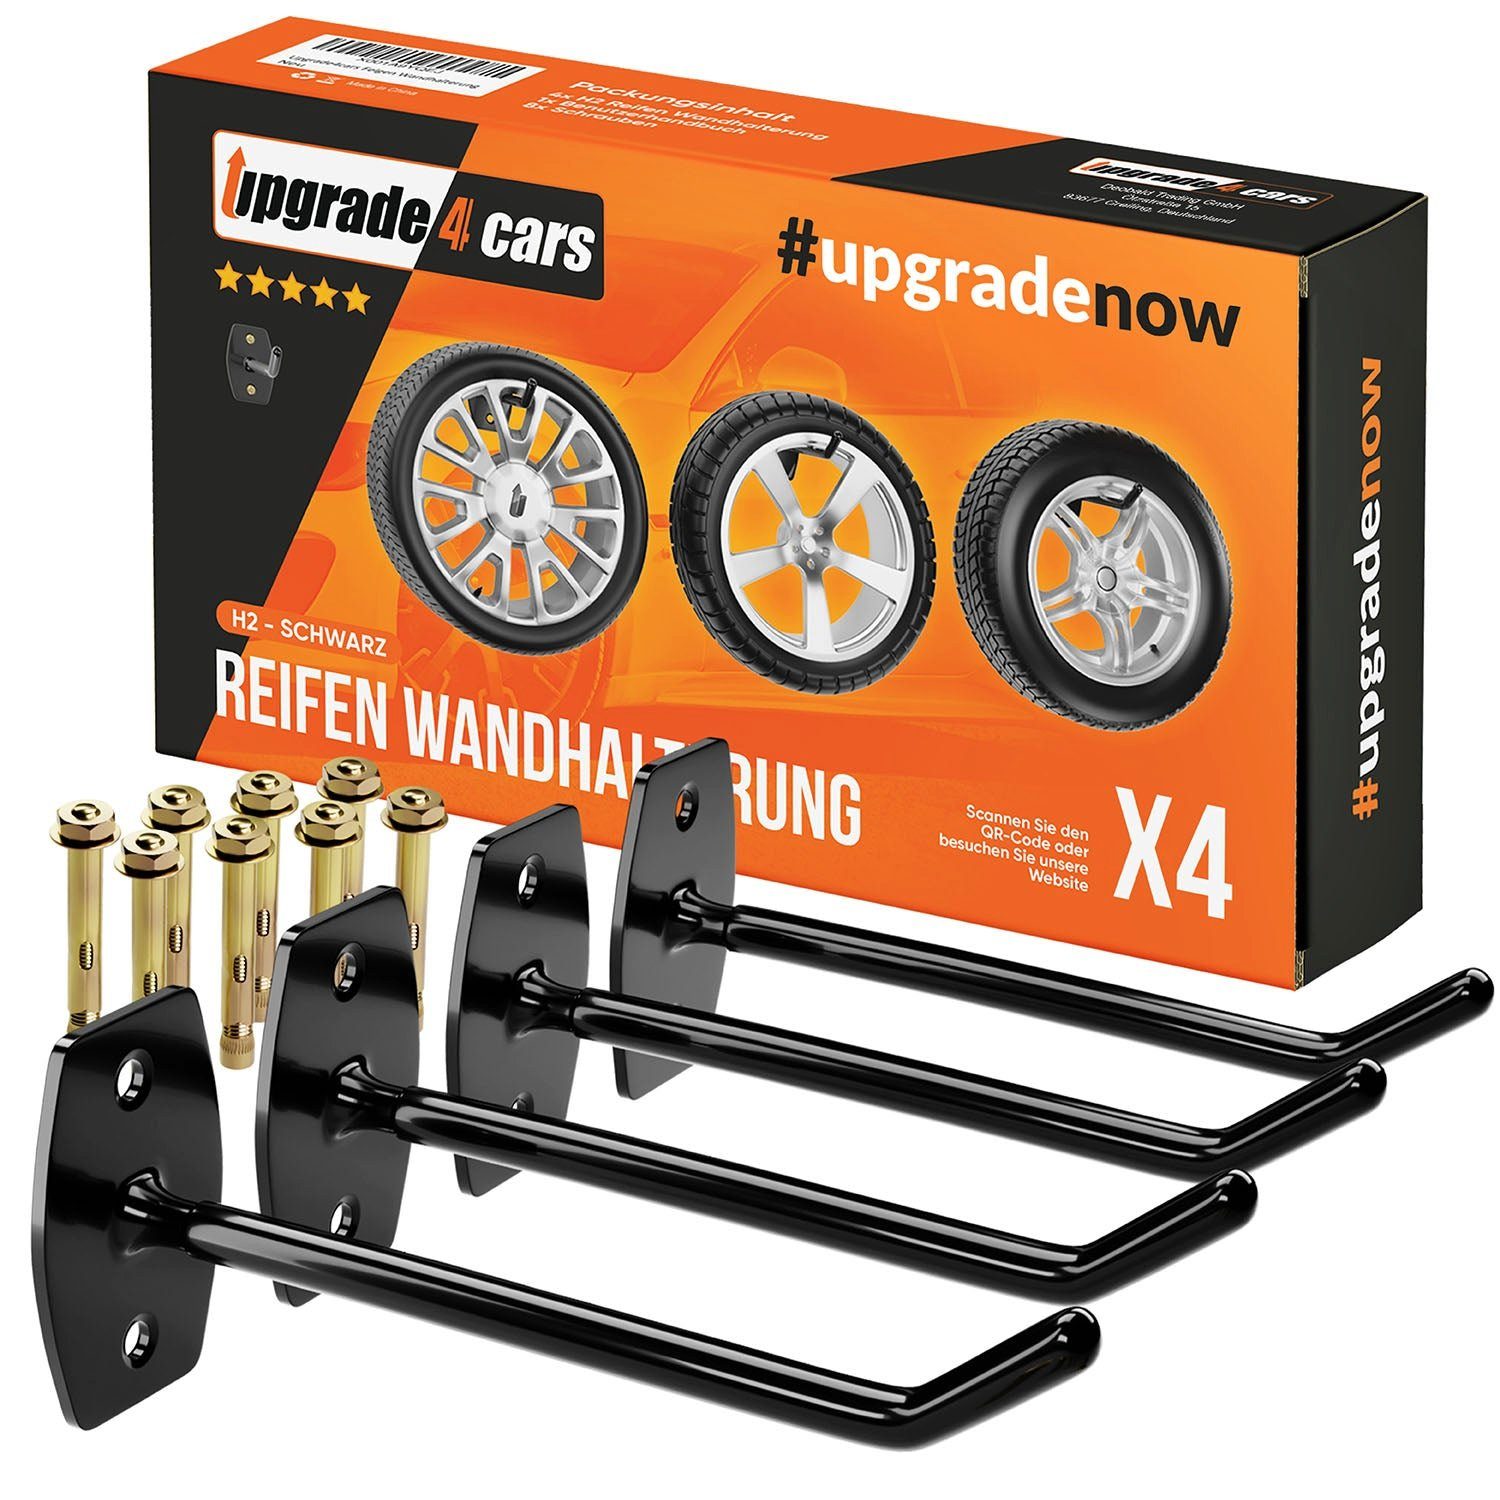 Upgrade4cars Reifenhalter Haken Set für 4 Felgen Reifen-Wandhalterung, (bis zu 22 Zoll, Edelstahl Reifenwandhalter Aufhängung Gummiert)